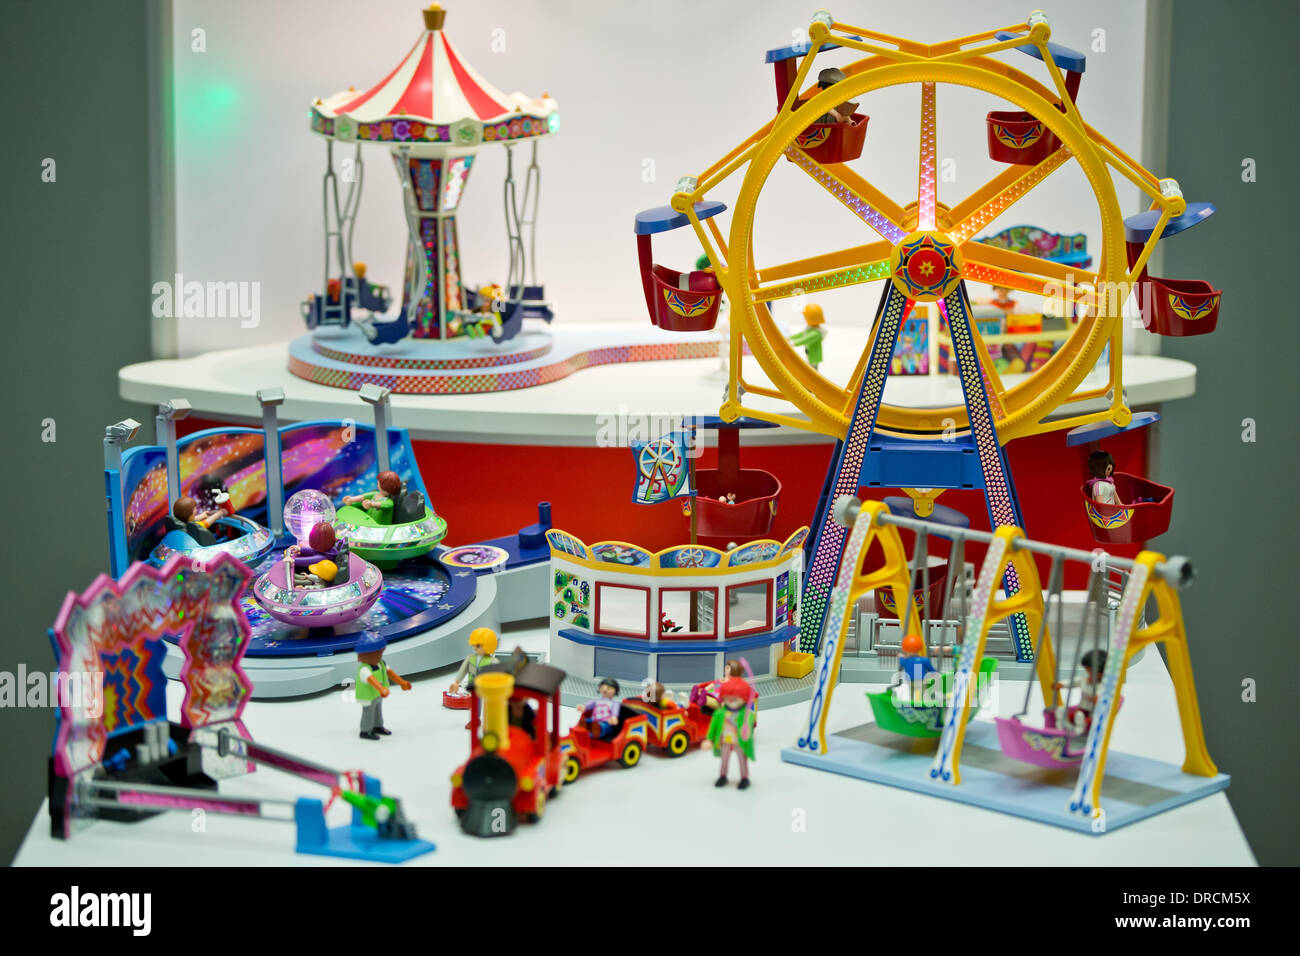 Nuremberg, Alemania. 23 ene, 2014. El parque de atracciones de Playmobil  por geobra Bloberger Hof GmbH, que está nominado para el premio 'juguete'  en la 'Categoría' choolKids, en Nuremberg, Alemania, 23 de